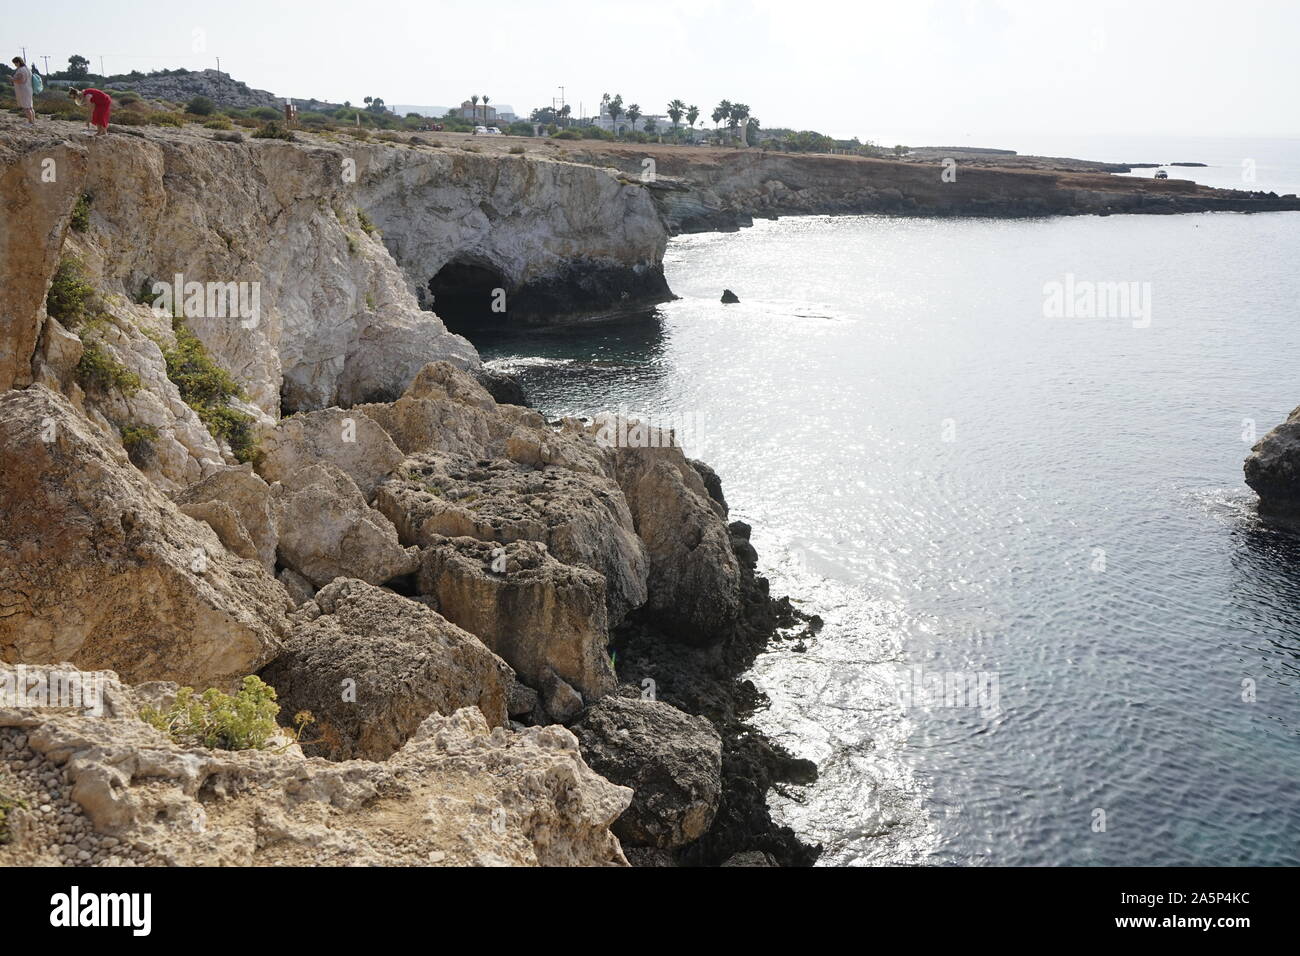 Love bridge ayia napa cyprus Stock Photo